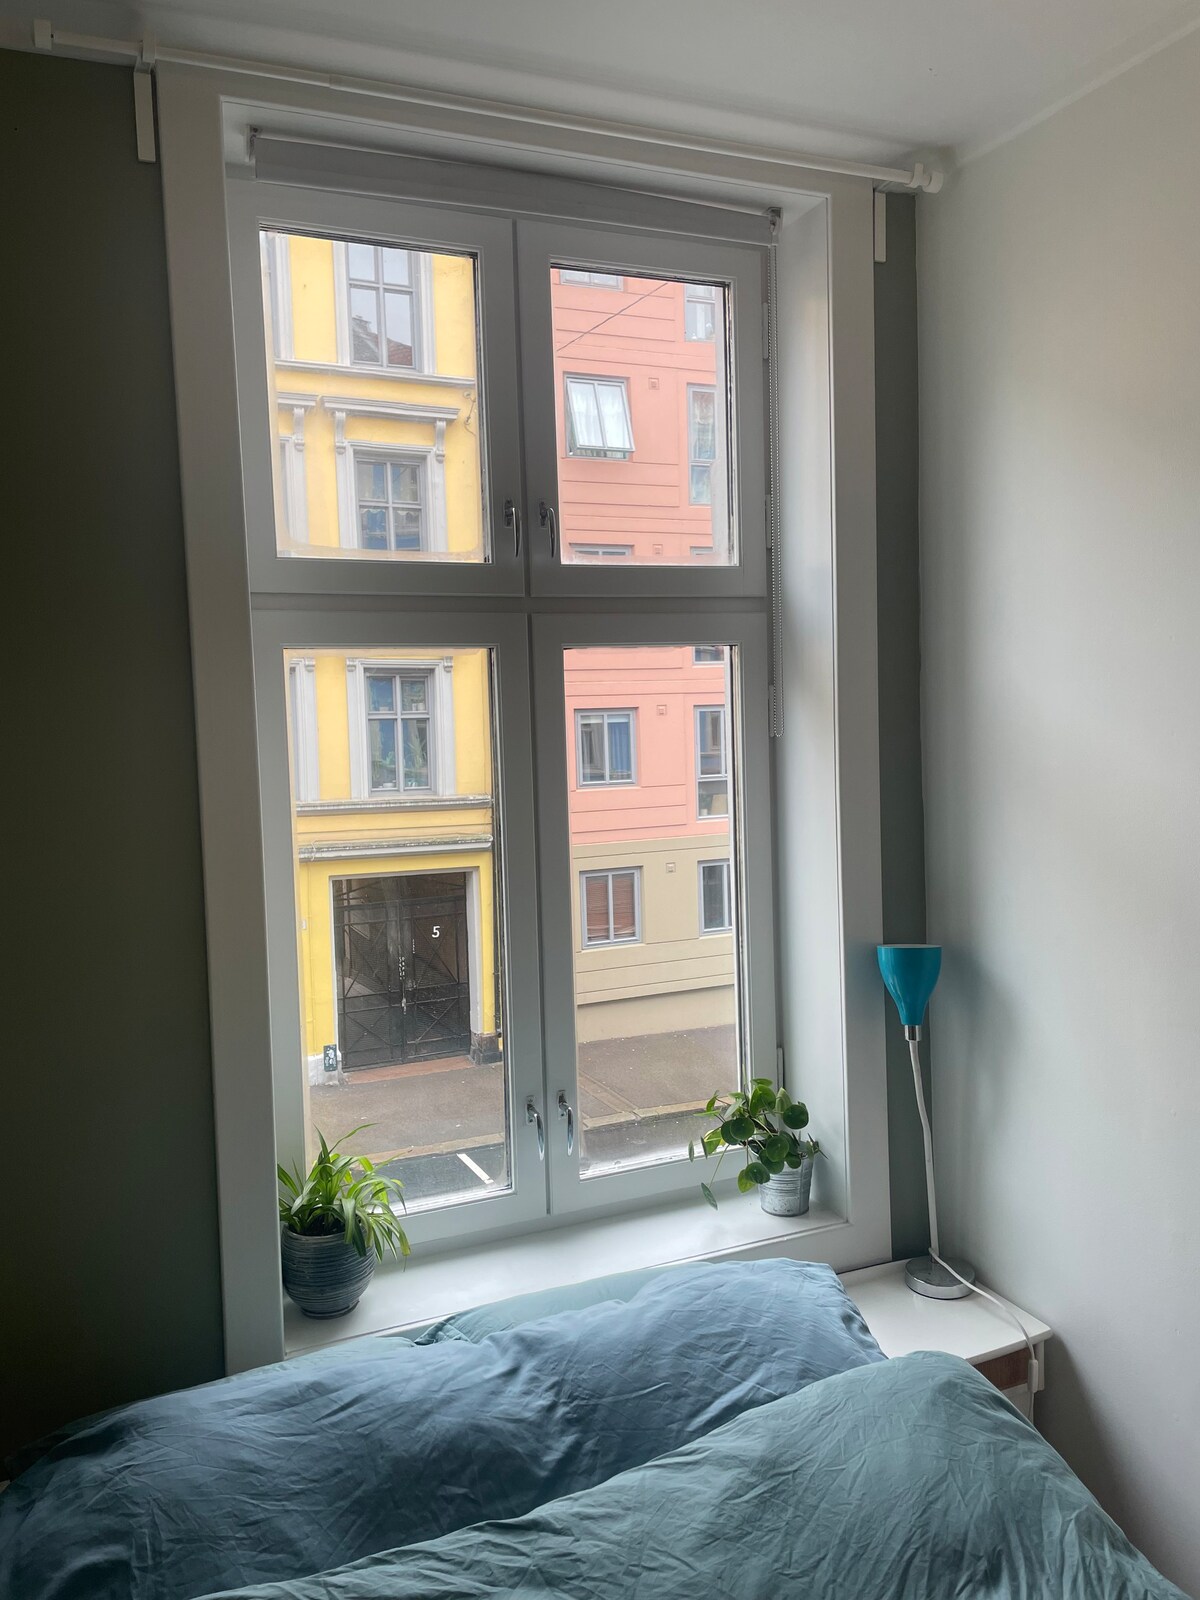 Grunerløkka带双人床的舒适房间和工作空间